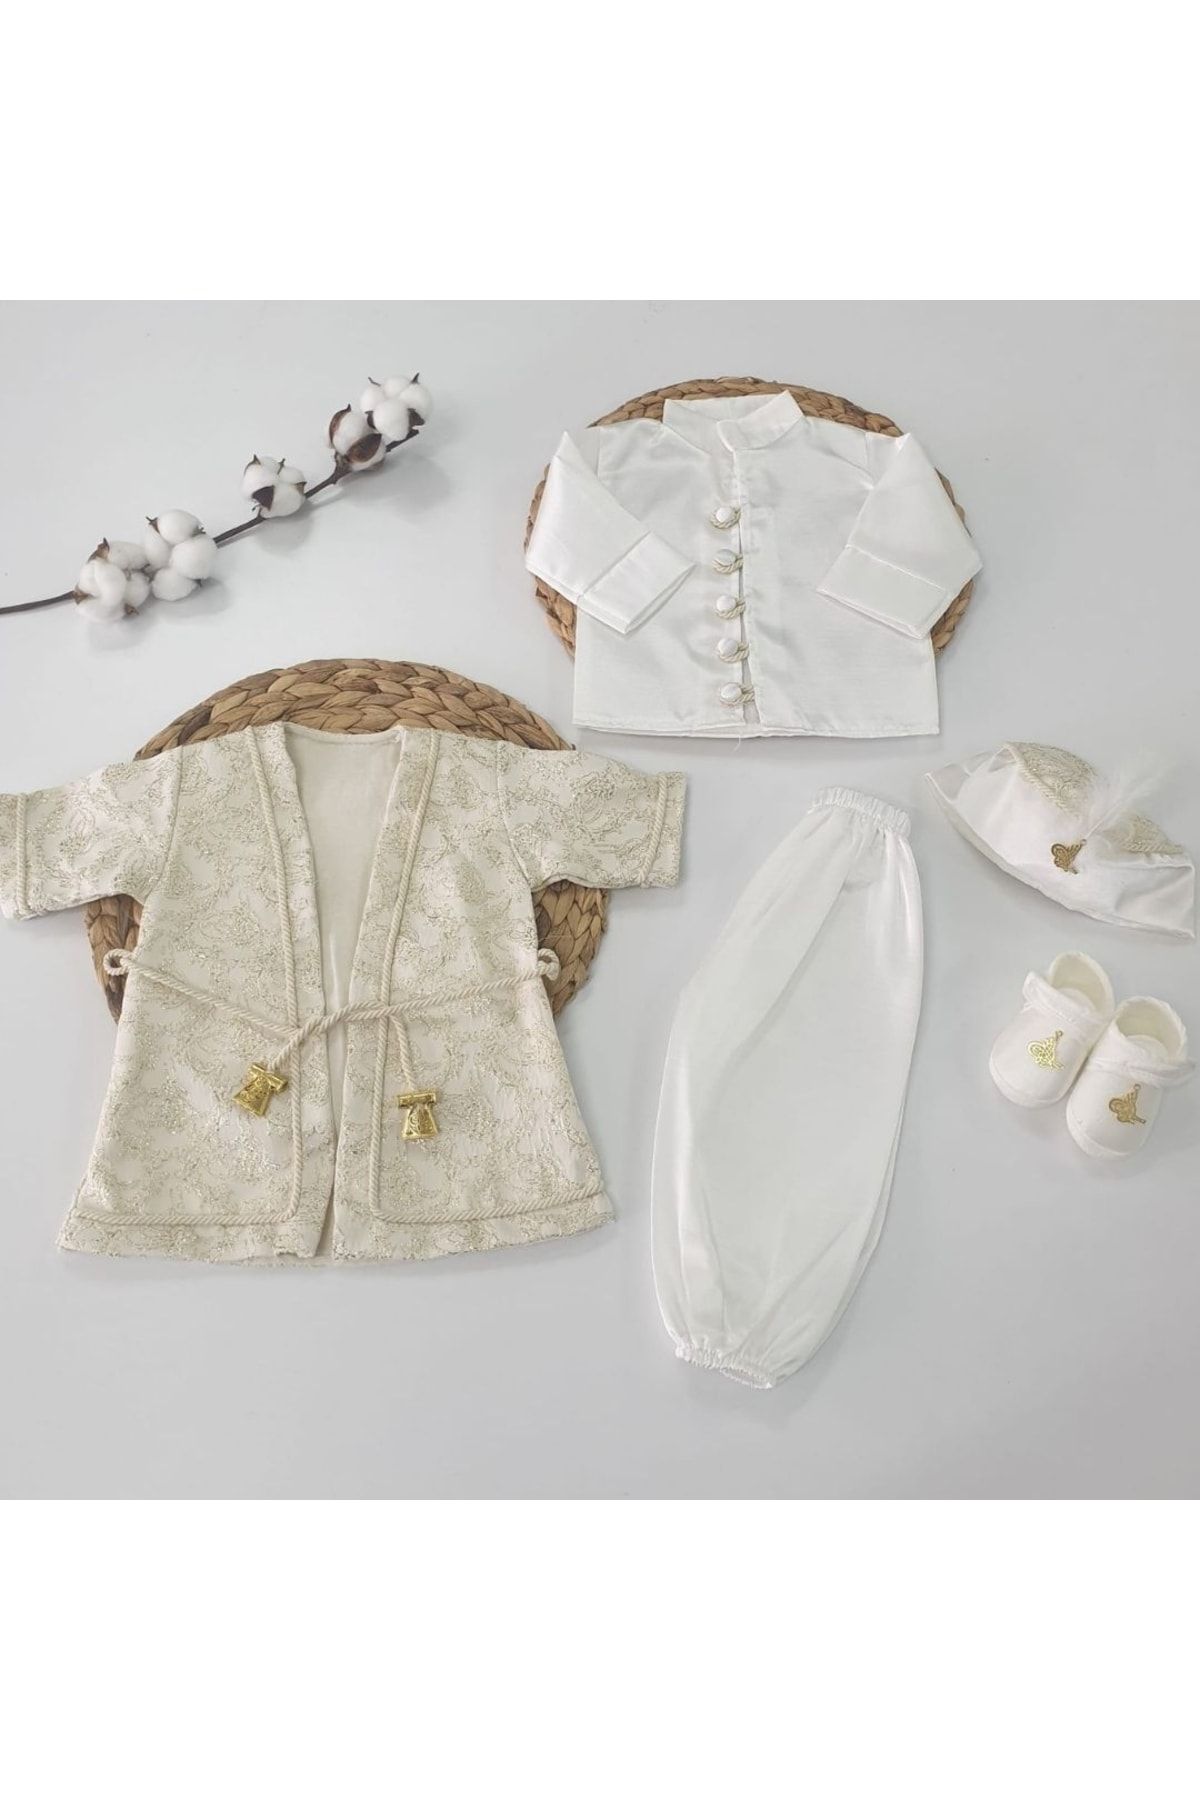 Harry&Millie Erkek Bebek Mevlütlük Şehzade Sünnetlik Sünnet Kıyafeti 6 Ay